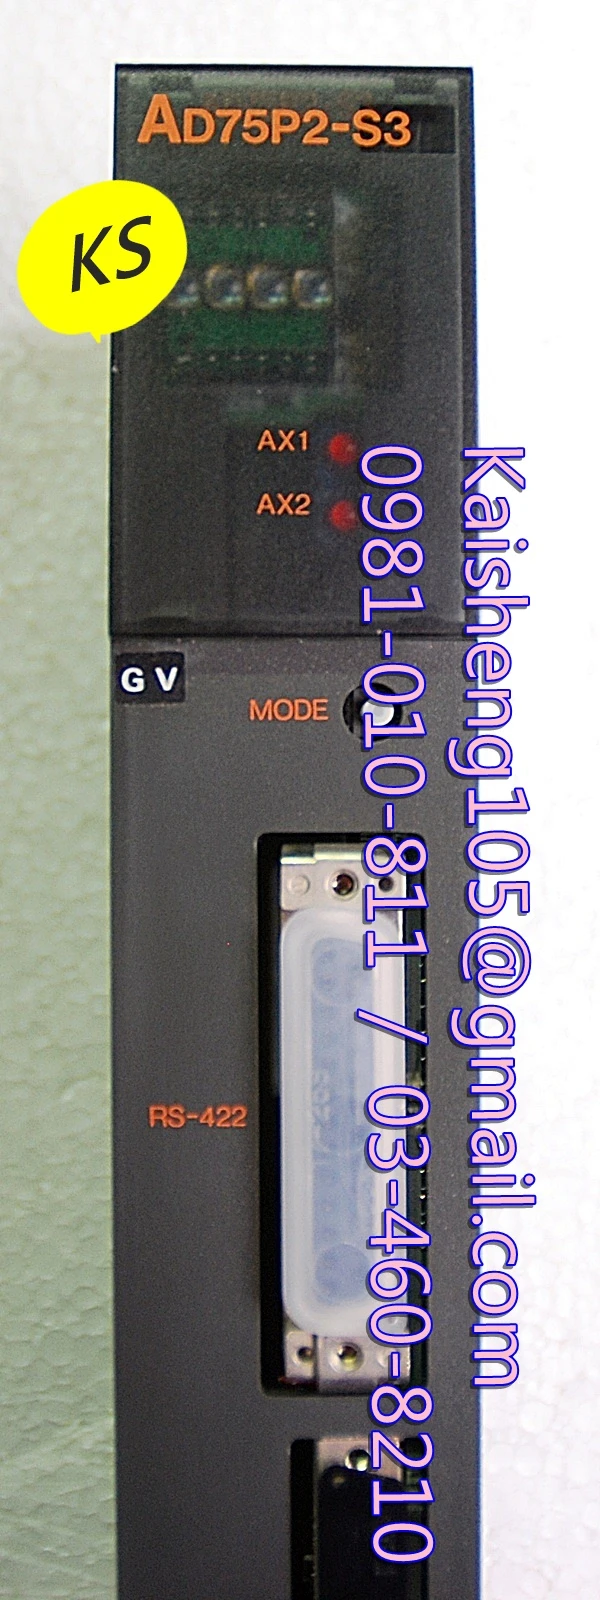 三菱模組PLC:A616DAVAD75P2-S3